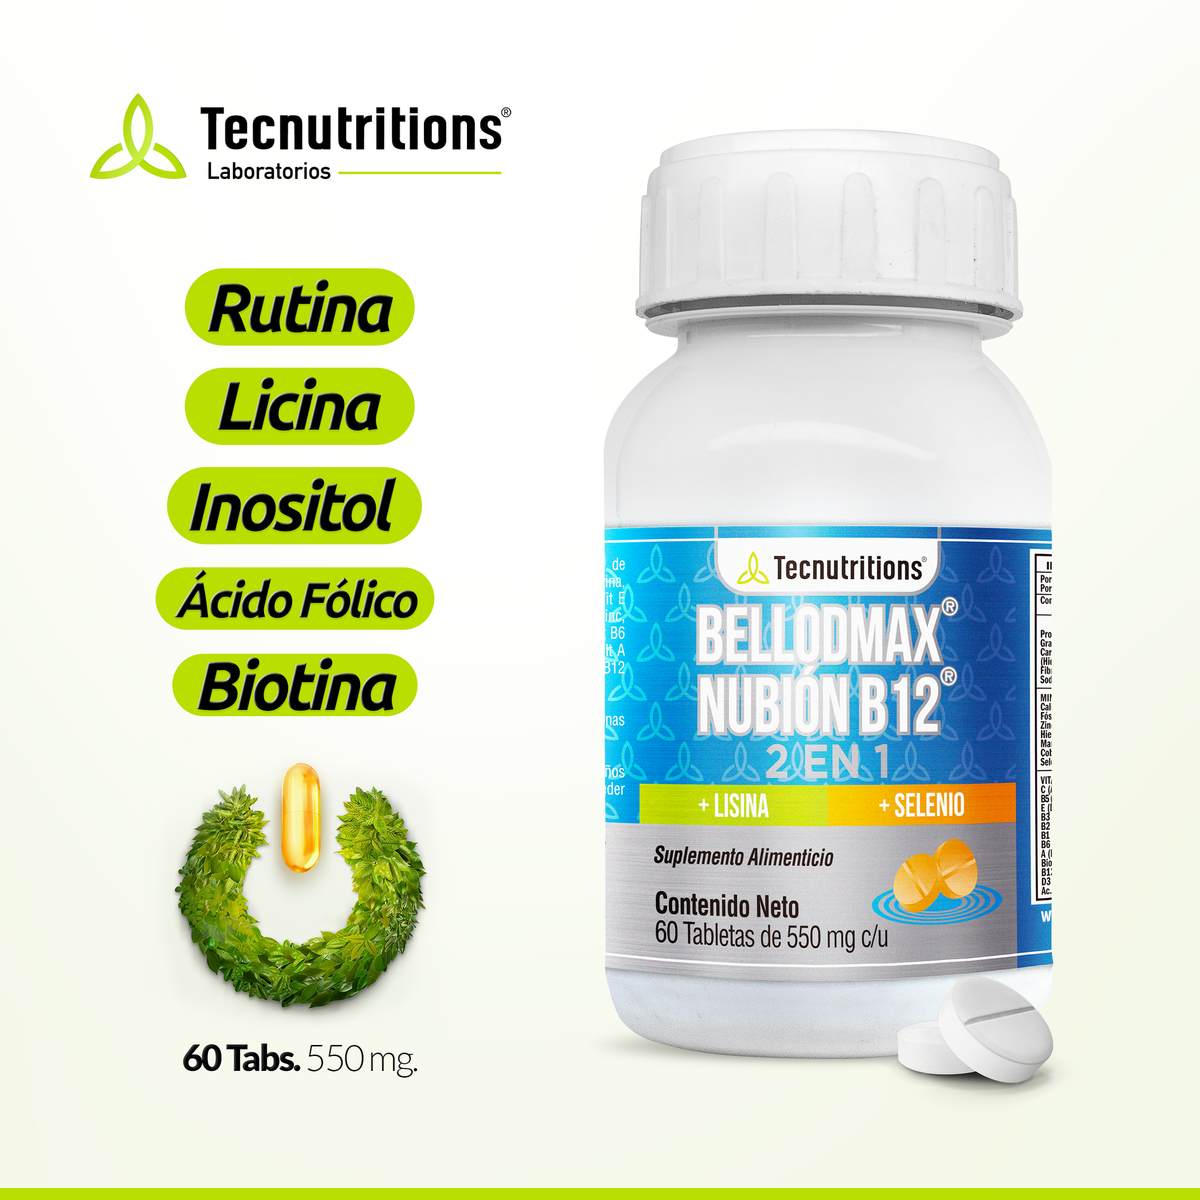 Suplemento alimenticio Bellodmax Nubión B12, 60 tabs, con complejo b, inositol, energía celular